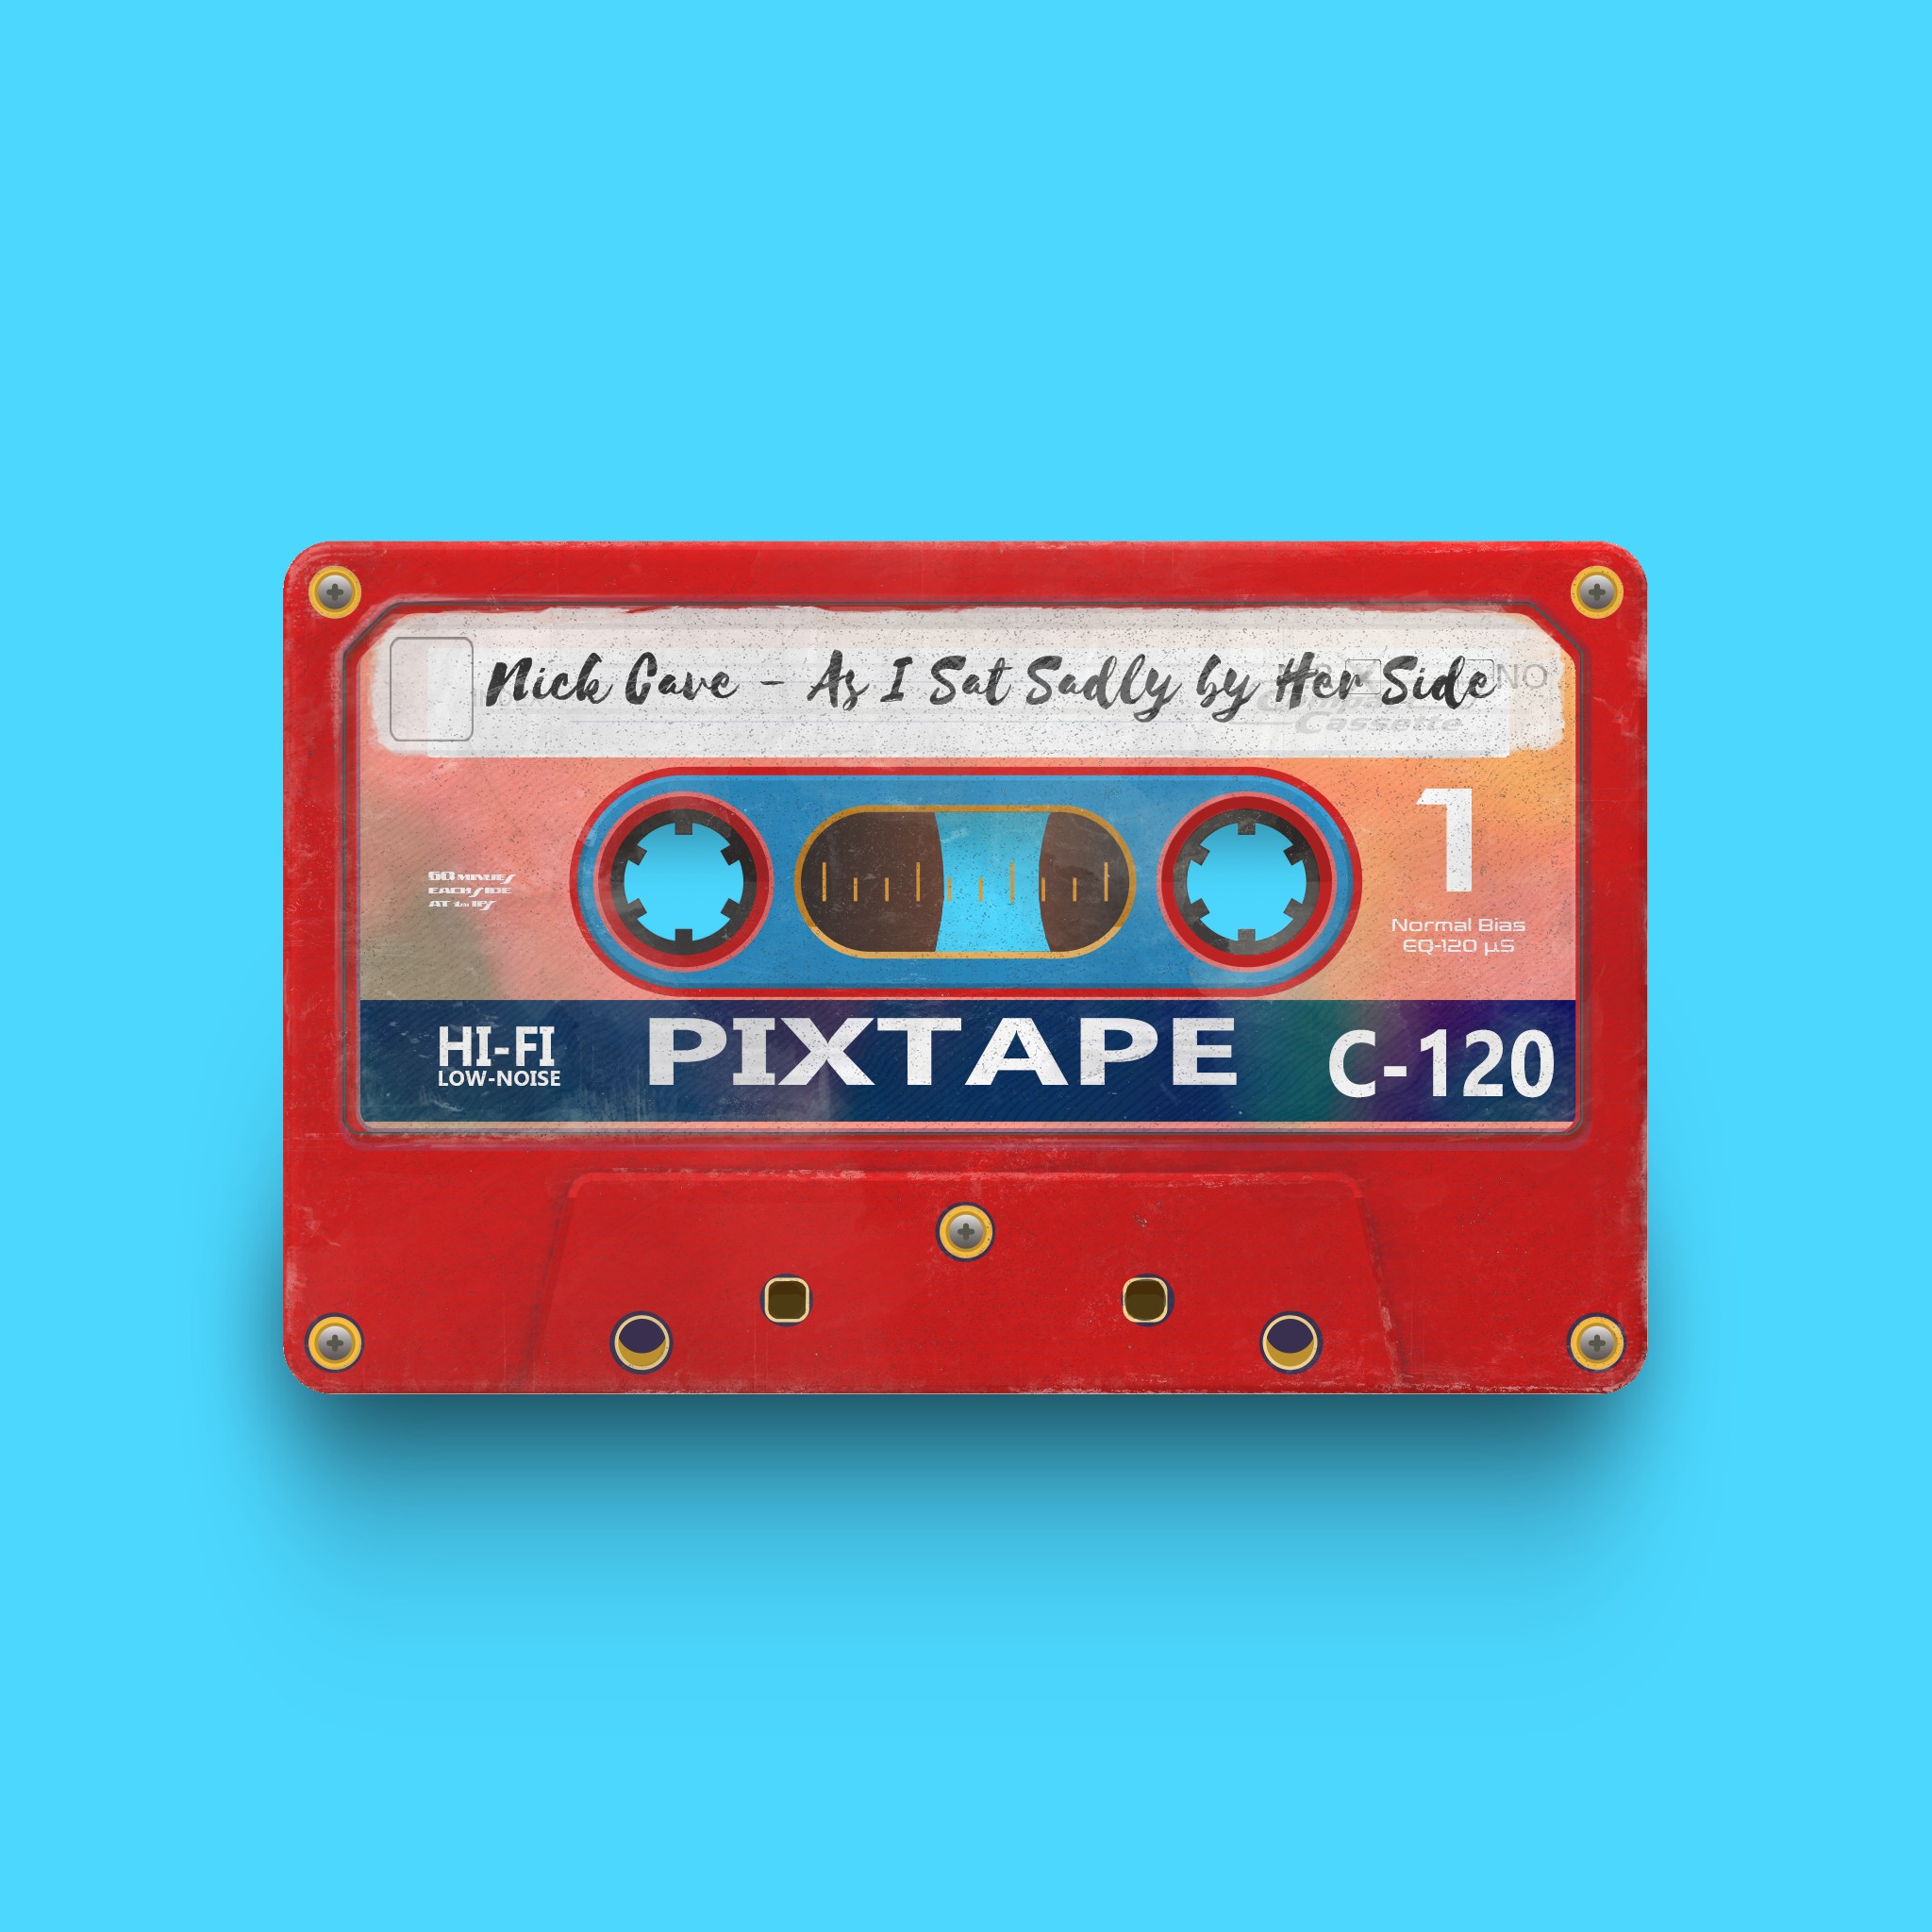 PixTape #7245 | Nick Cave - As I Sat Sadly by Her Side | NFT on SolSea